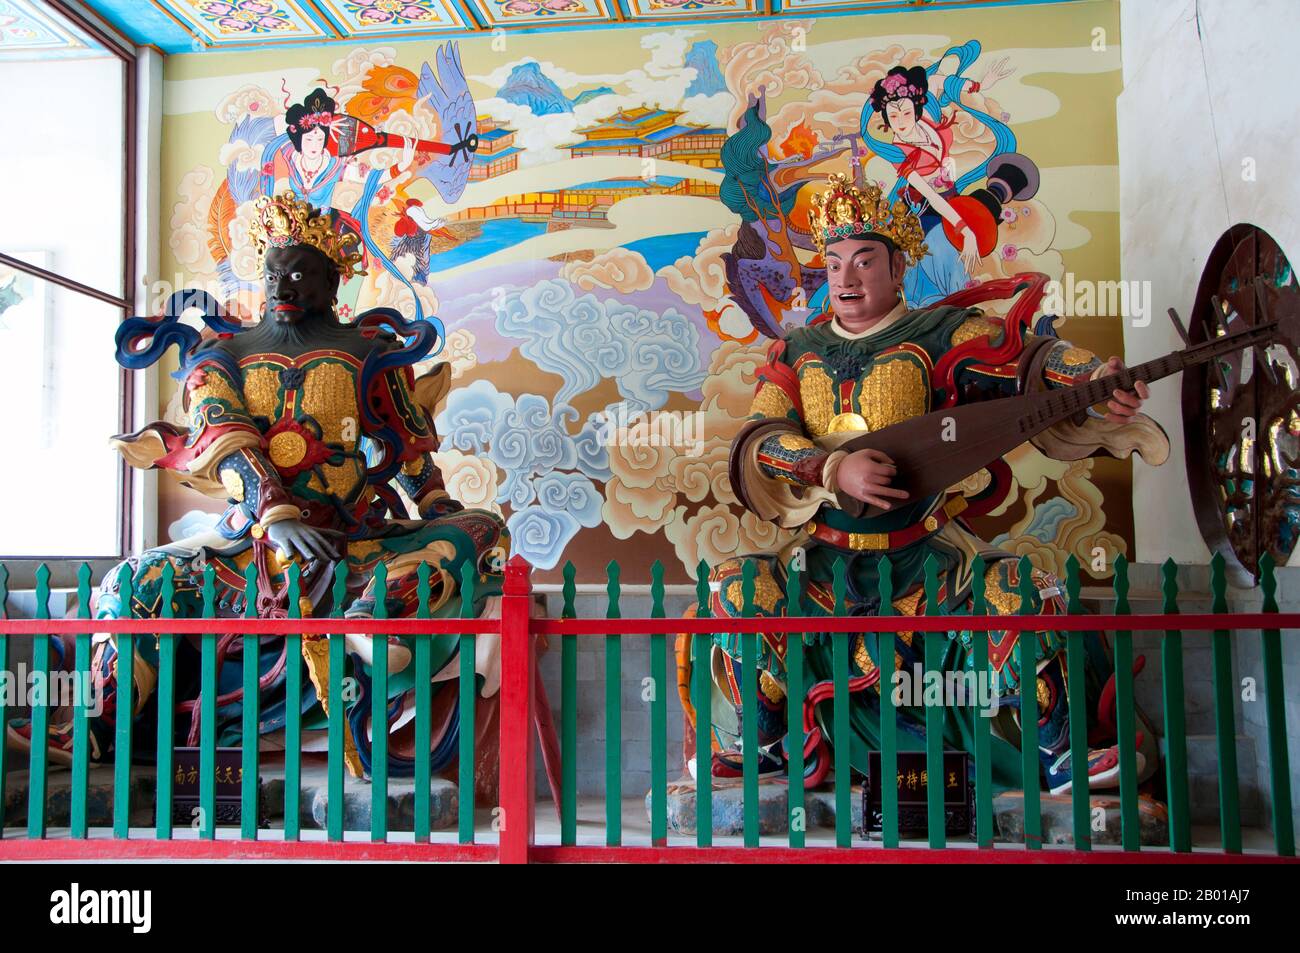 Chine: Figurines de gardien, Qiongzhu si (Temple Bamboo), au nord-ouest de Kunming. Qiongzhu si a été construit à l'origine pendant la dynastie Tang (618-907), mais a été correctement établi pendant la dynastie Yuan (1271-1368) comme le premier temple dédié au bouddhisme zen dans le Yunnan. Le temple est célèbre pour ses 500 arhats peints créés sous le règne de l'empereur Qing Guangxu (1875-1909) par le sculpteur Li Guangxiu. Banque D'Images